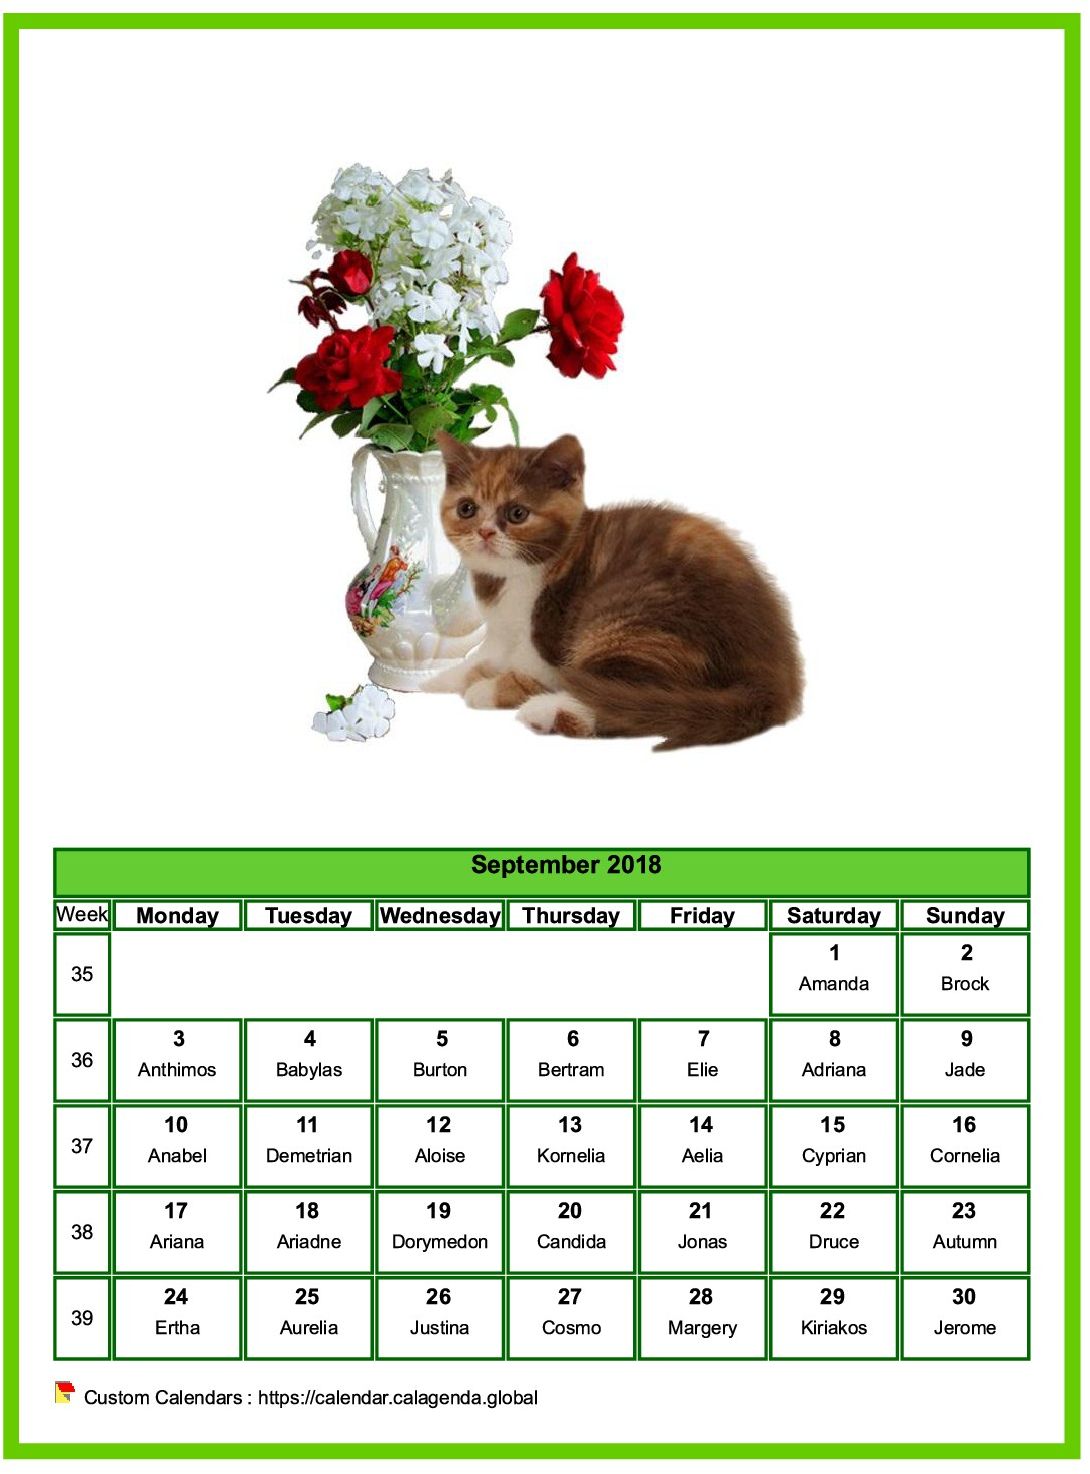 Calendar September 2018 cats